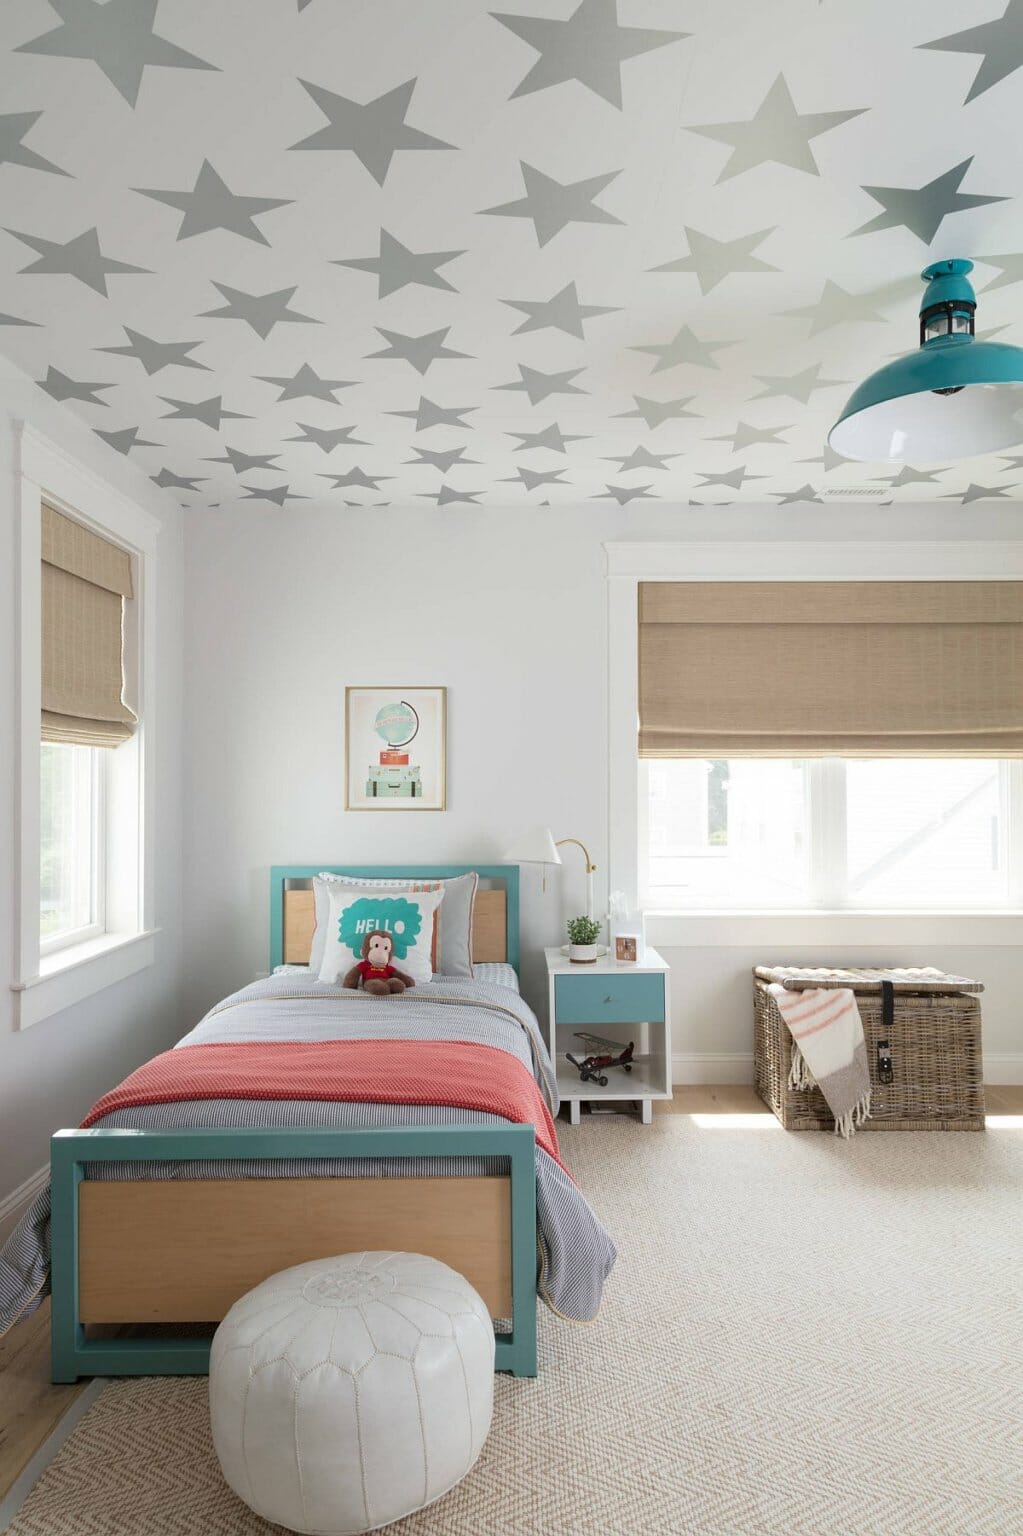 Phòng ngủ của trẻ với giấy dán trần đầy sao, giường nhỏ xinh, cửa sổ kính